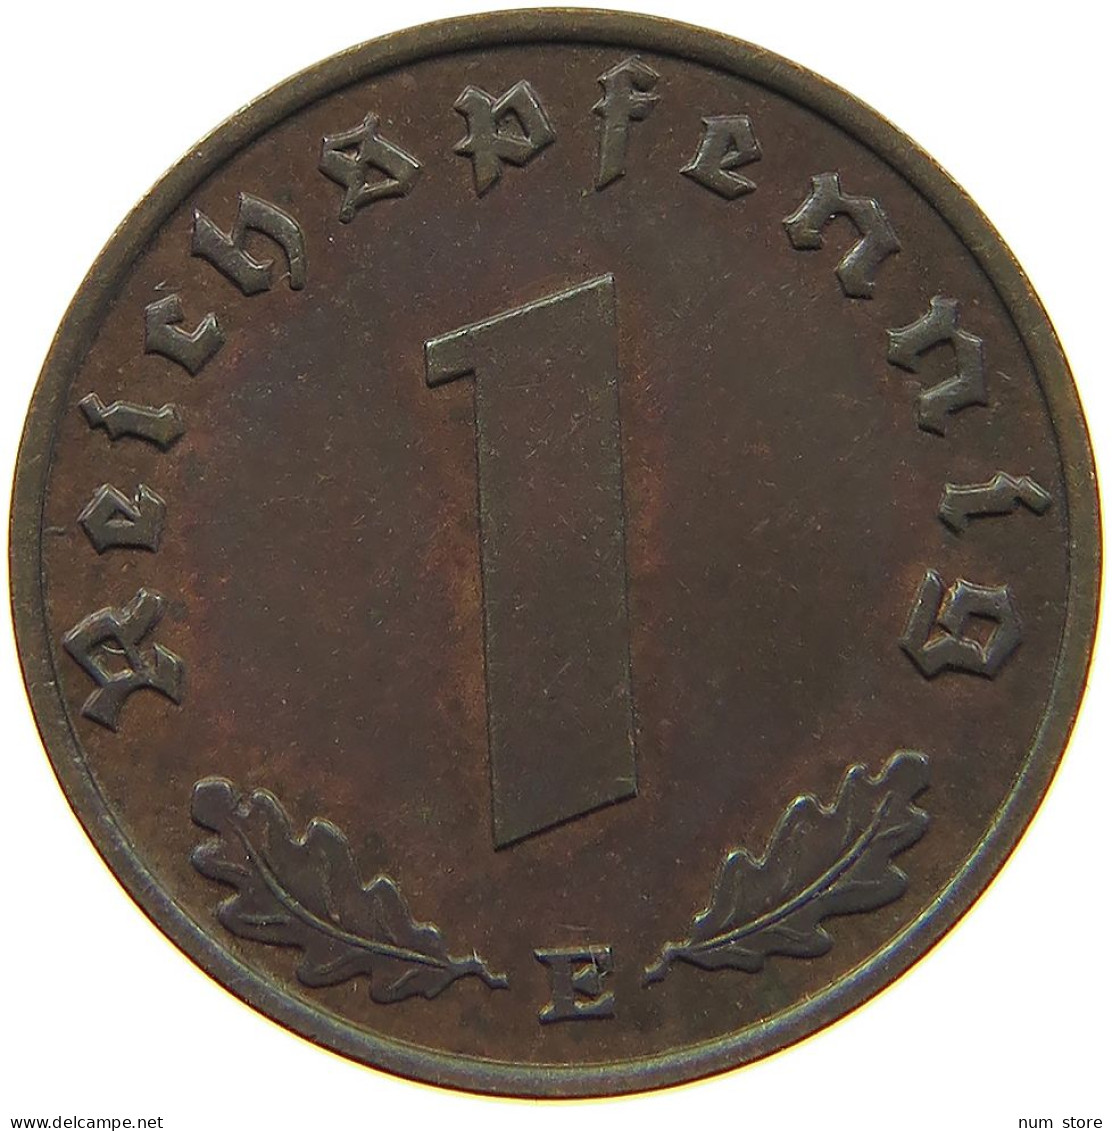 GERMANY 1 REICHSPFENNIG 1938 E #s096 0135 - 1 Reichspfennig